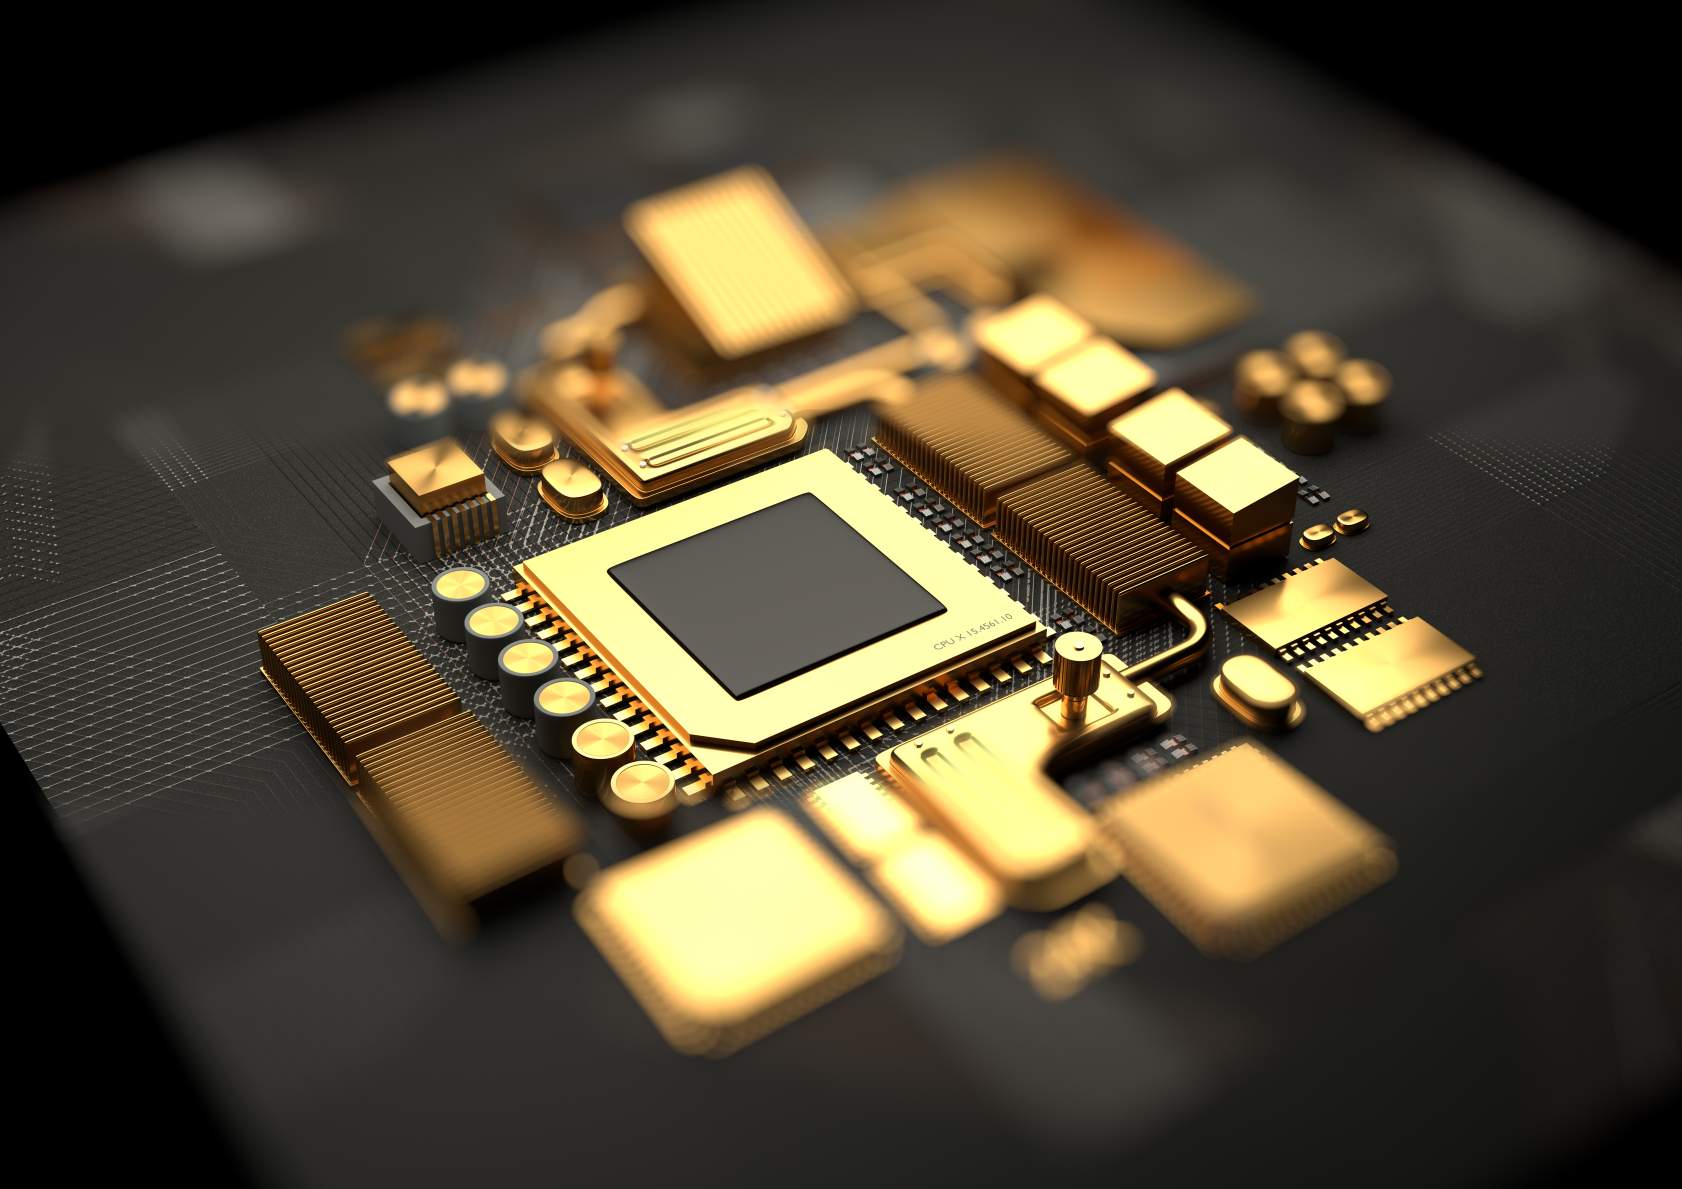 由黄金制成的 CPU 和主板芯片组组件的概念图。 © 图片来源：Solarseven | 从 DreamsTime.com 获得许可（社论/商业用途库存照片）